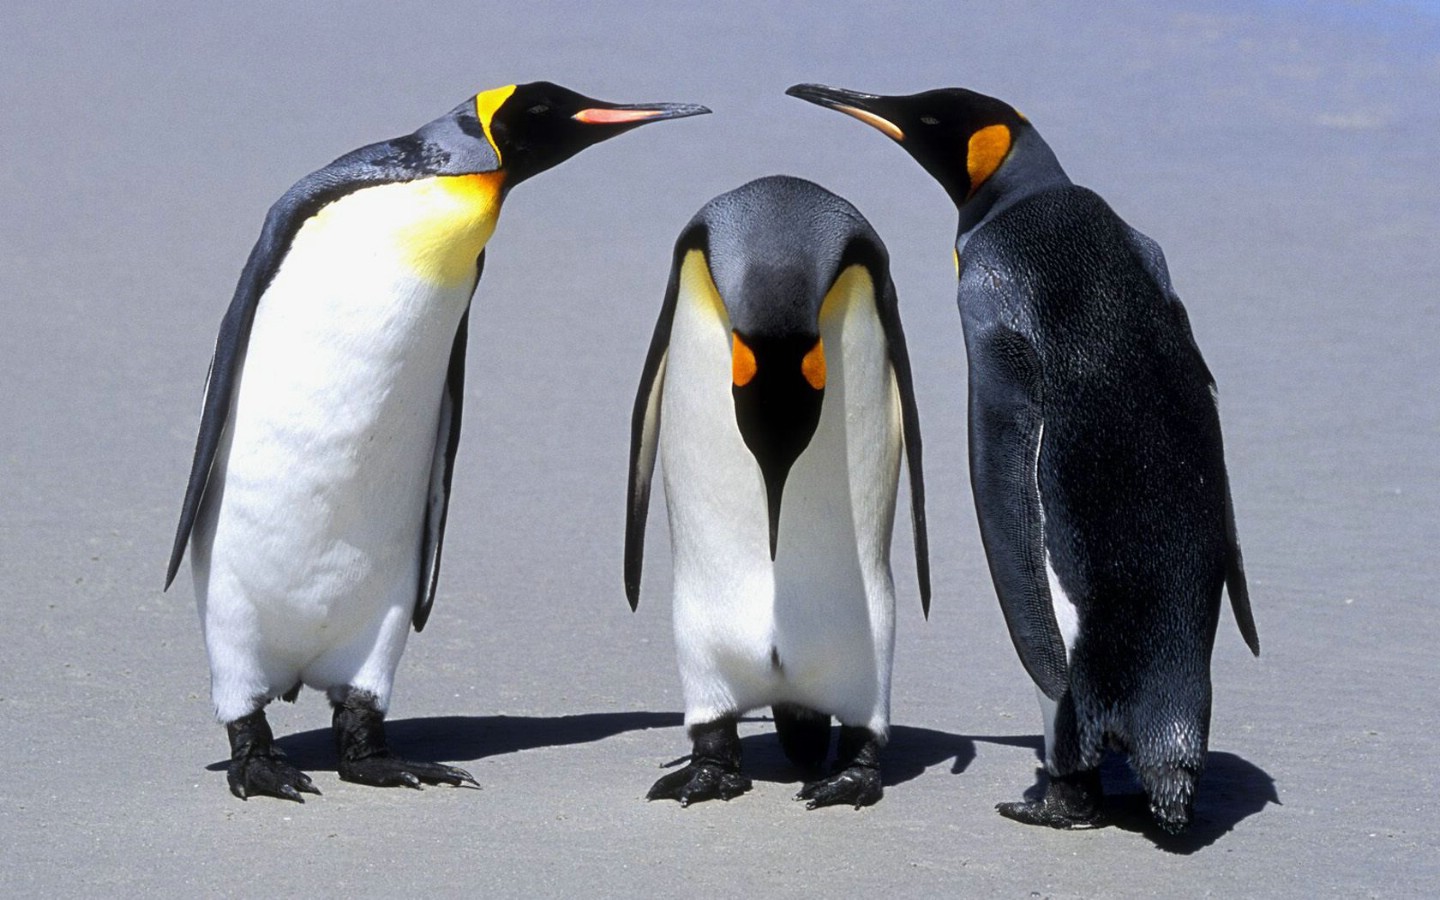 壁纸1440x900 Penguins Falkland Islands 福克兰群岛企鹅图片壁纸壁纸 大尺寸世界各地动物壁纸精选 第一辑壁纸 大尺寸世界各地动物壁纸精选 第一辑图片 大尺寸世界各地动物壁纸精选 第一辑素材 动物壁纸 动物图库 动物图片素材桌面壁纸